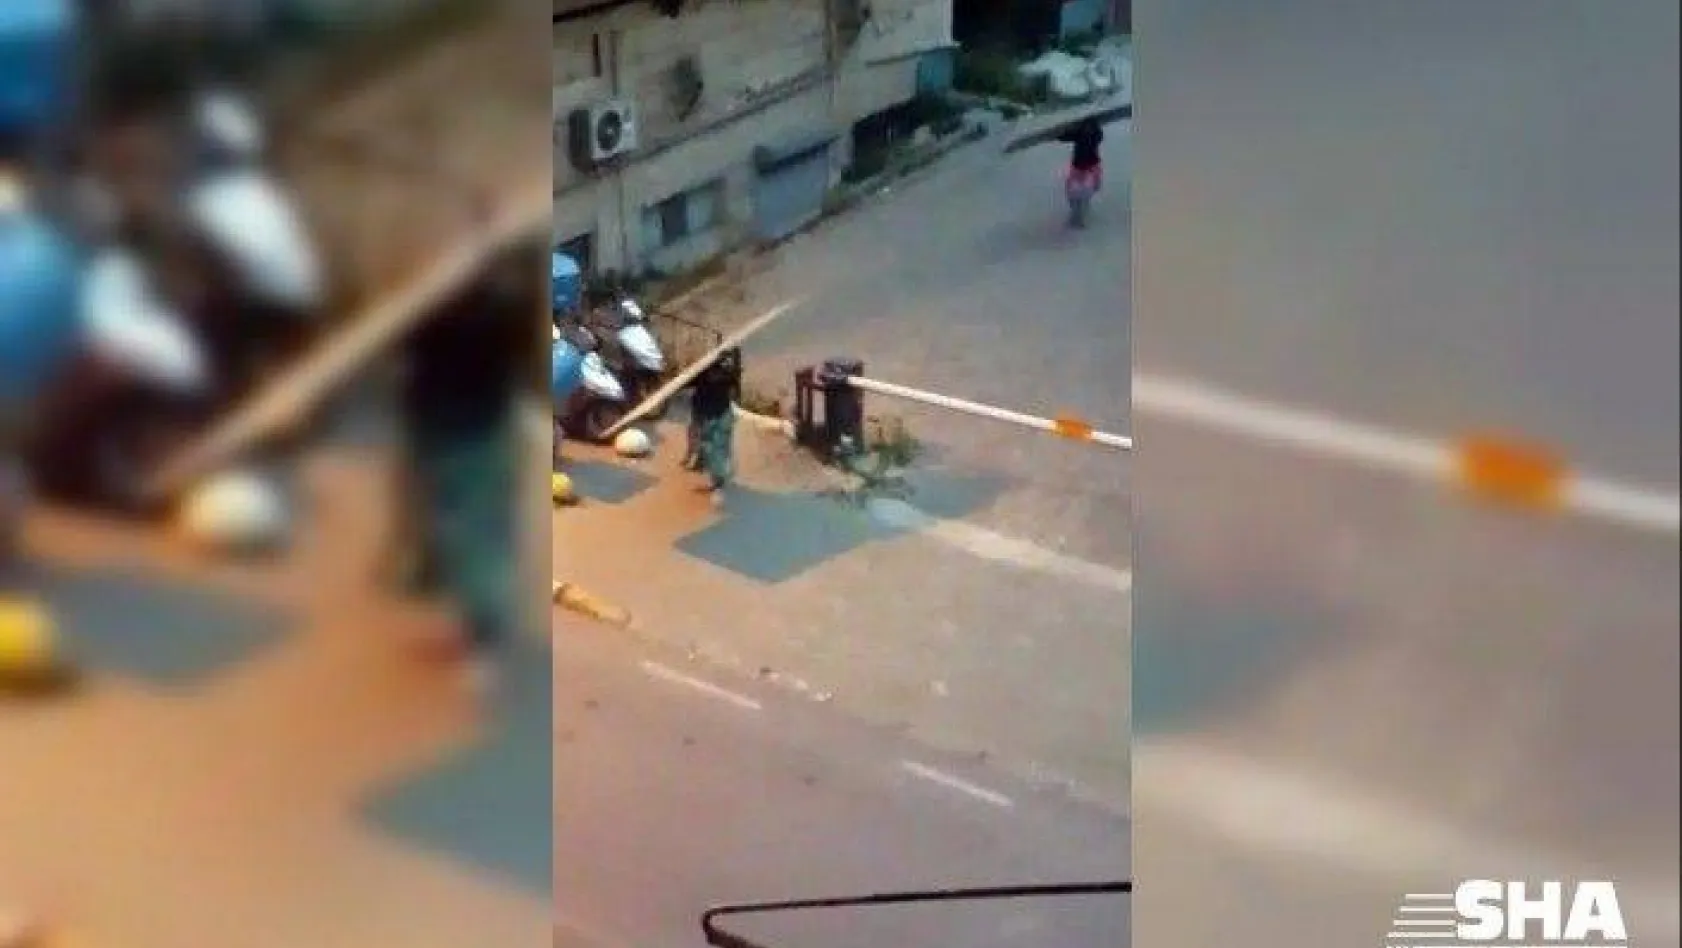 At arabalı 4 kadın hırsız önce kameraya ardından polise yakalandı